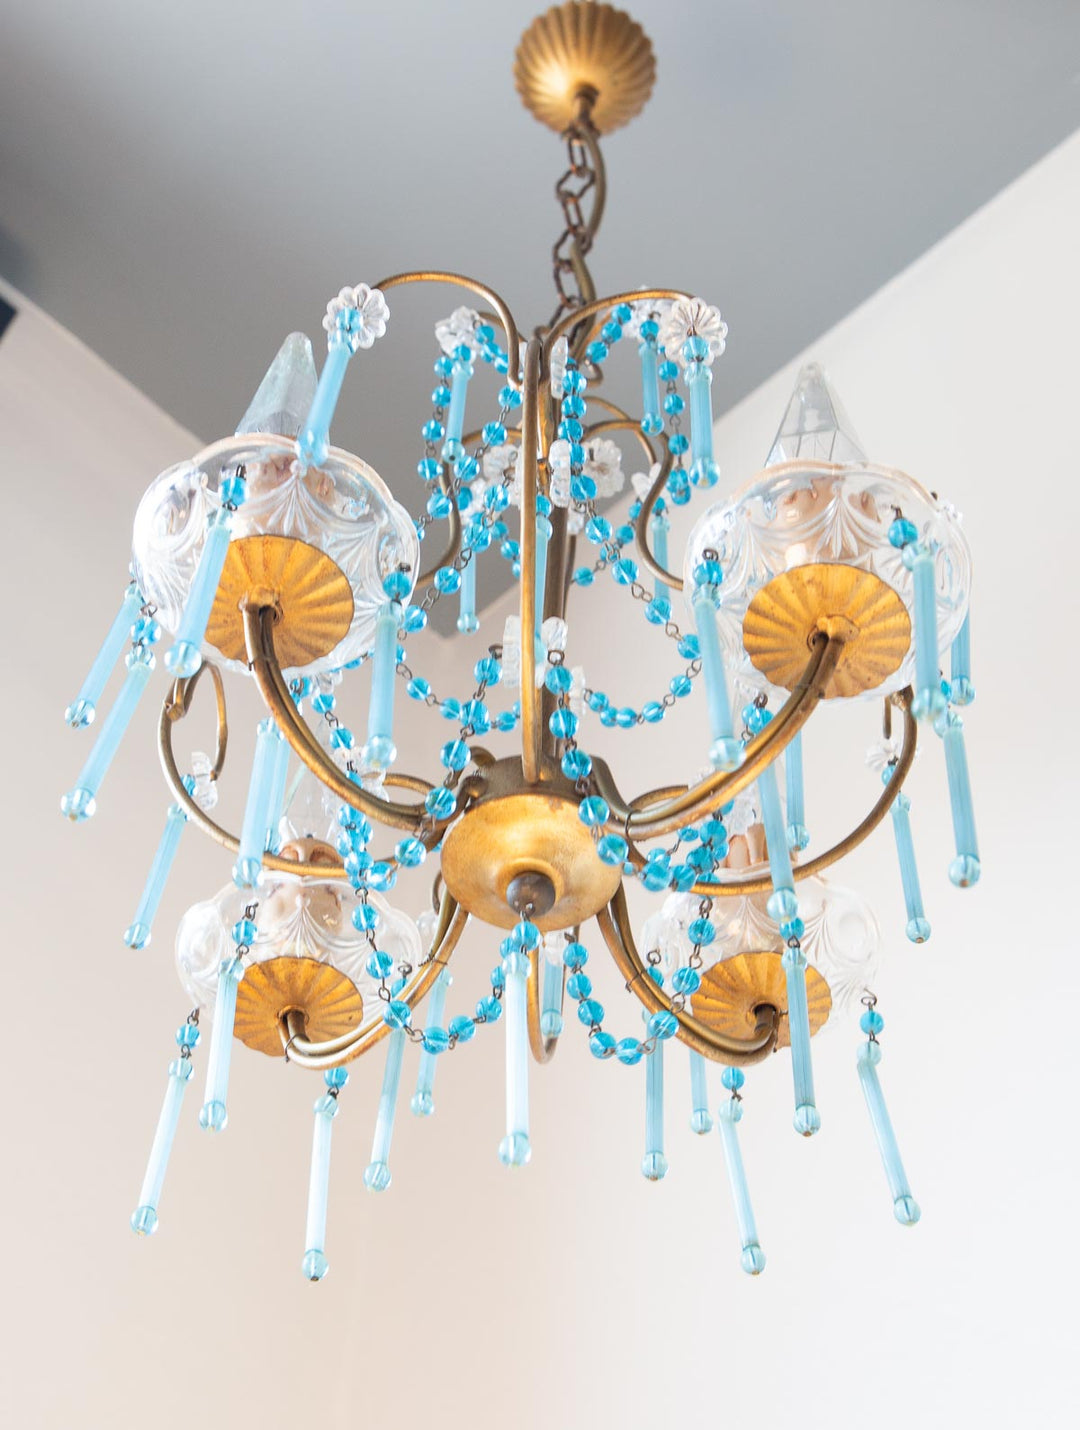 Antigua lampara de araña techo italiana dorada y cristales antique italian chandelier cristales opalina azul blue opaline glass